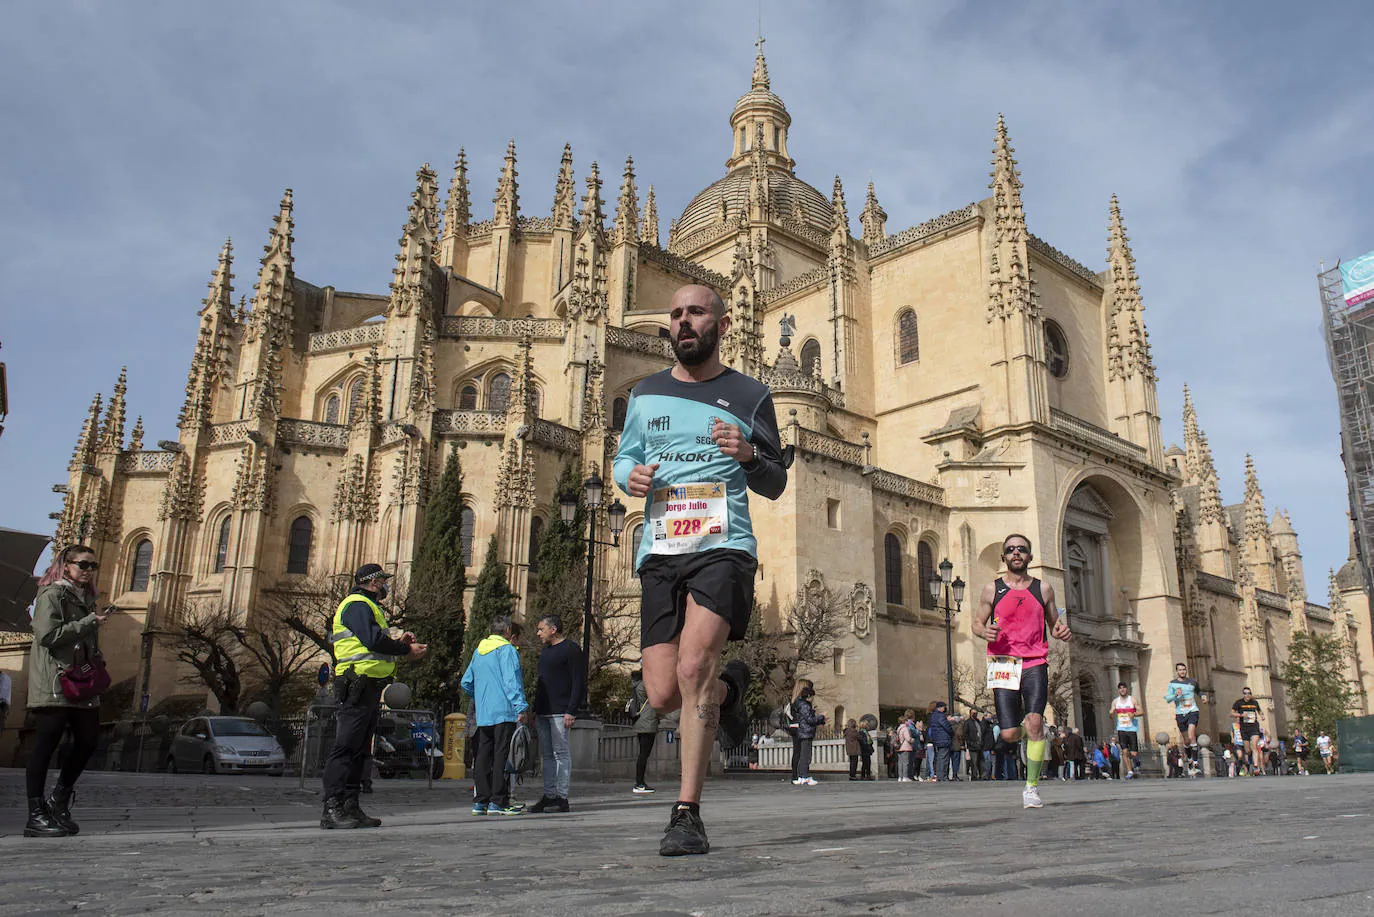 Fotos: La Media Maratón de Segovia imágenes | El Norte Castilla